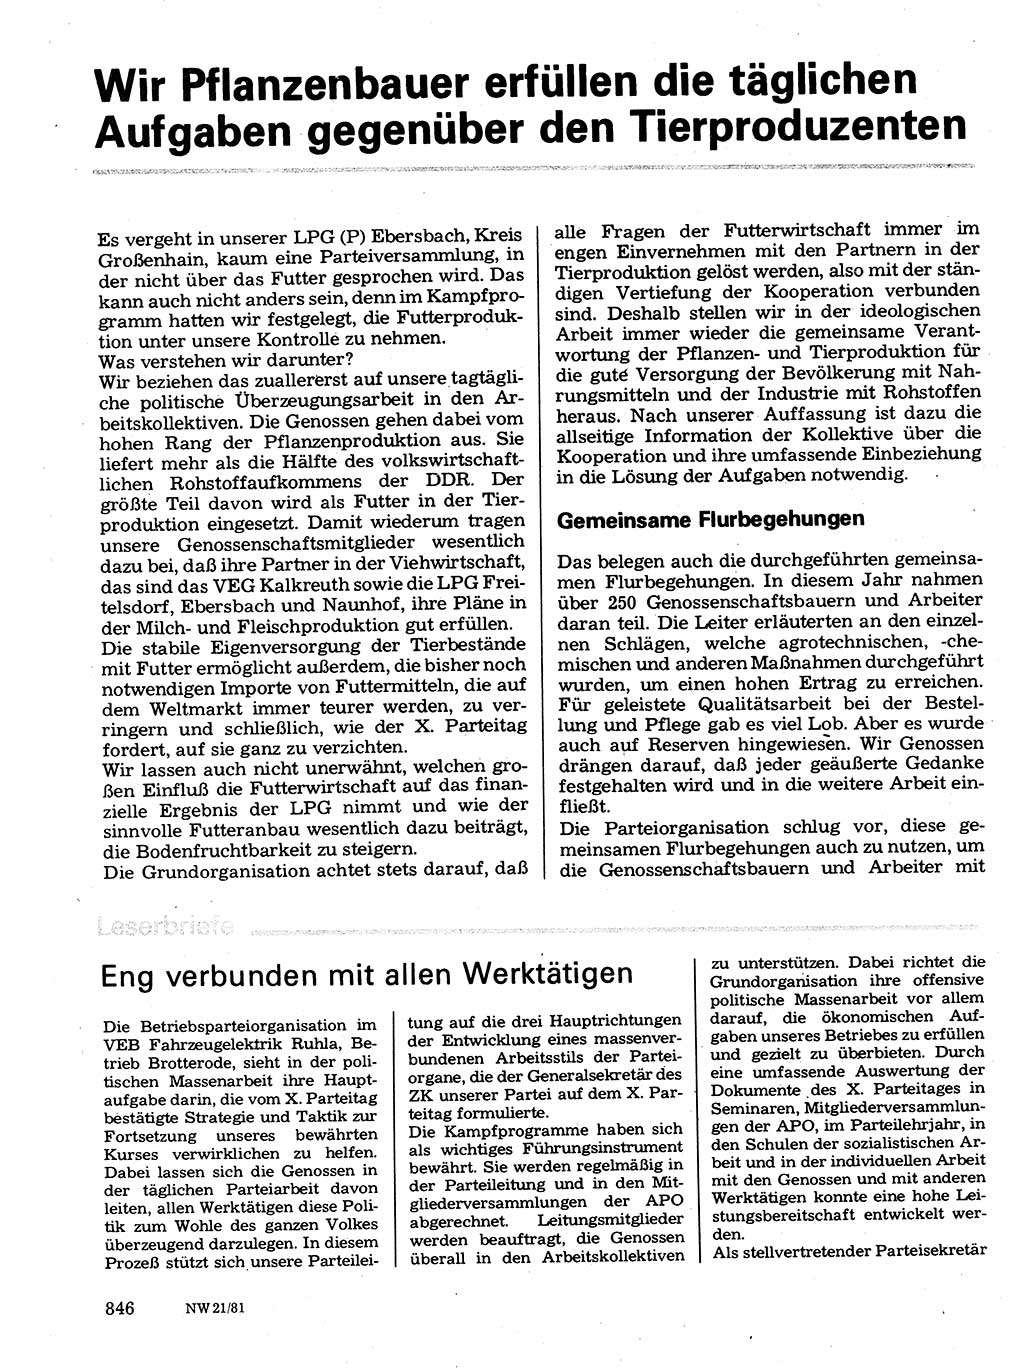 Neuer Weg (NW), Organ des Zentralkomitees (ZK) der SED (Sozialistische Einheitspartei Deutschlands) für Fragen des Parteilebens, 36. Jahrgang [Deutsche Demokratische Republik (DDR)] 1981, Seite 846 (NW ZK SED DDR 1981, S. 846)